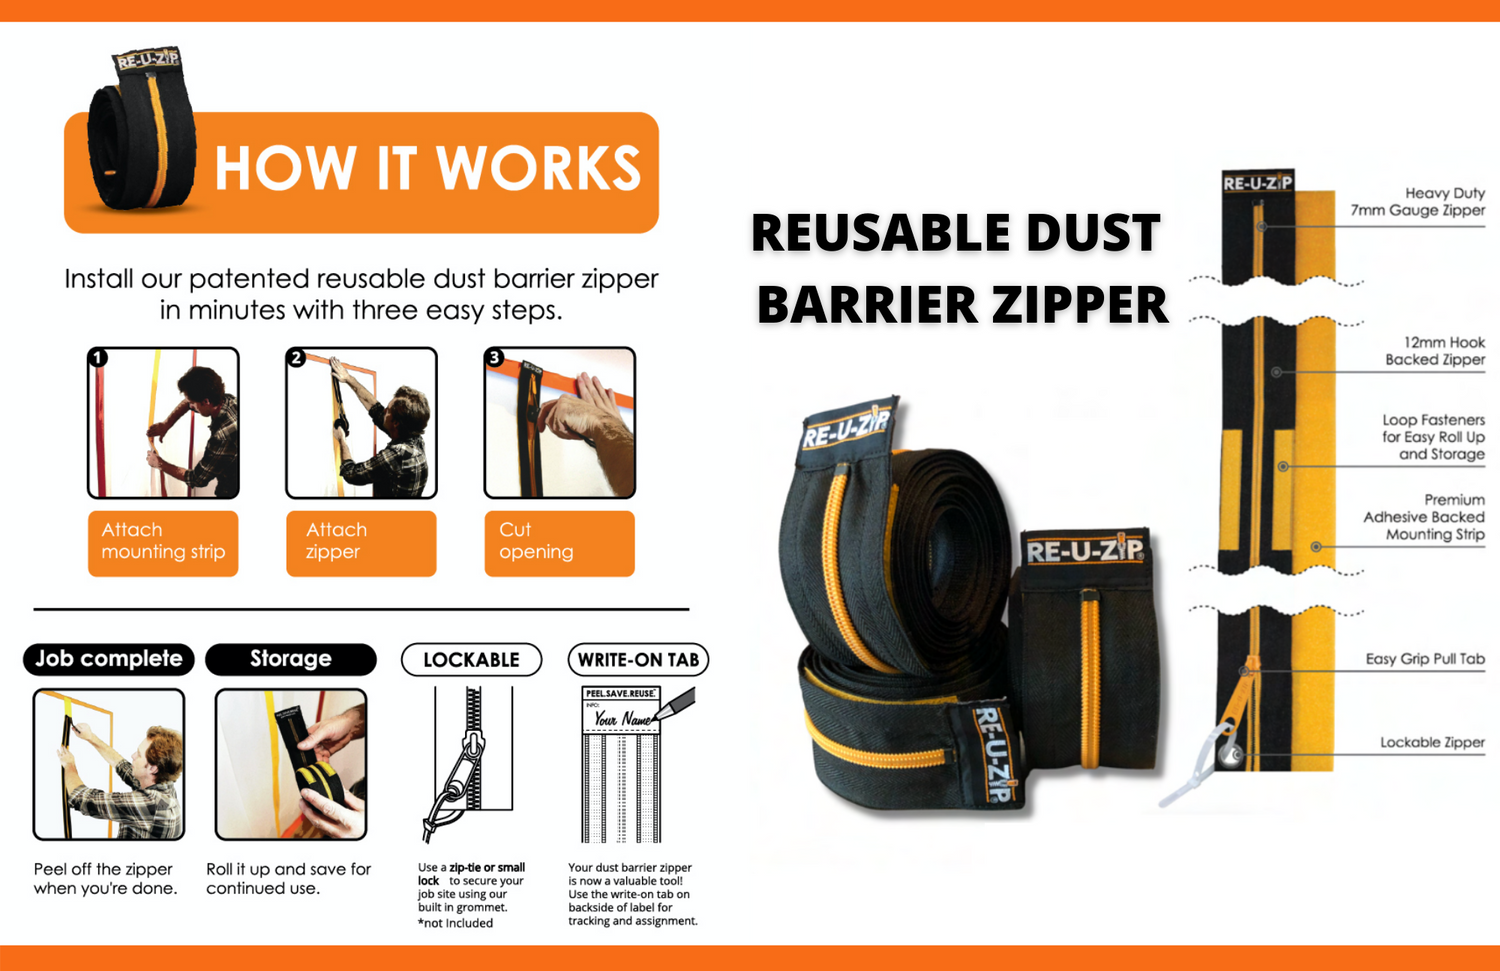 RE-U-ZIP Reusable and lockable dust barrier zipper